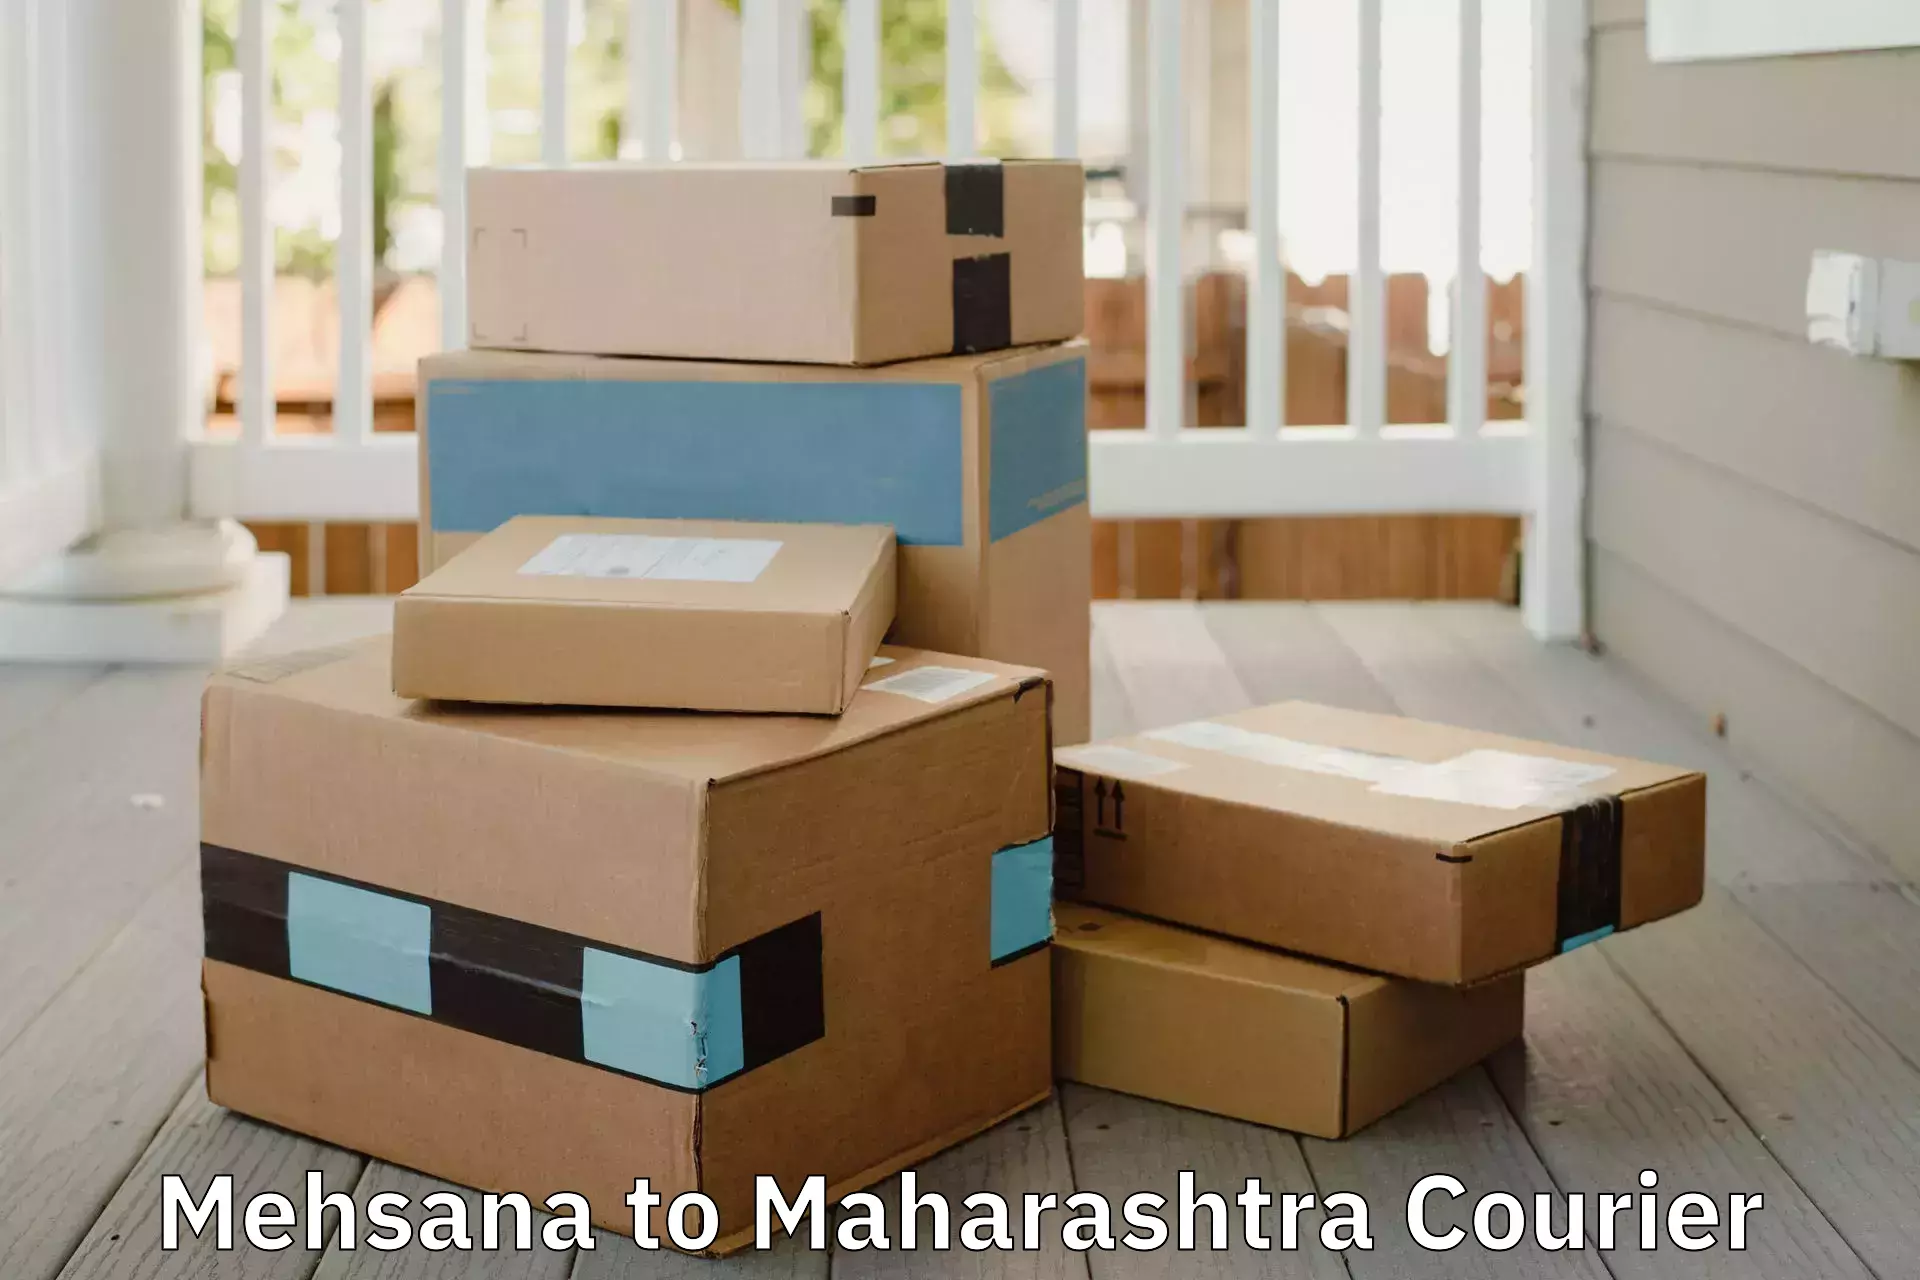 Home moving specialists Mehsana to Maharashtra